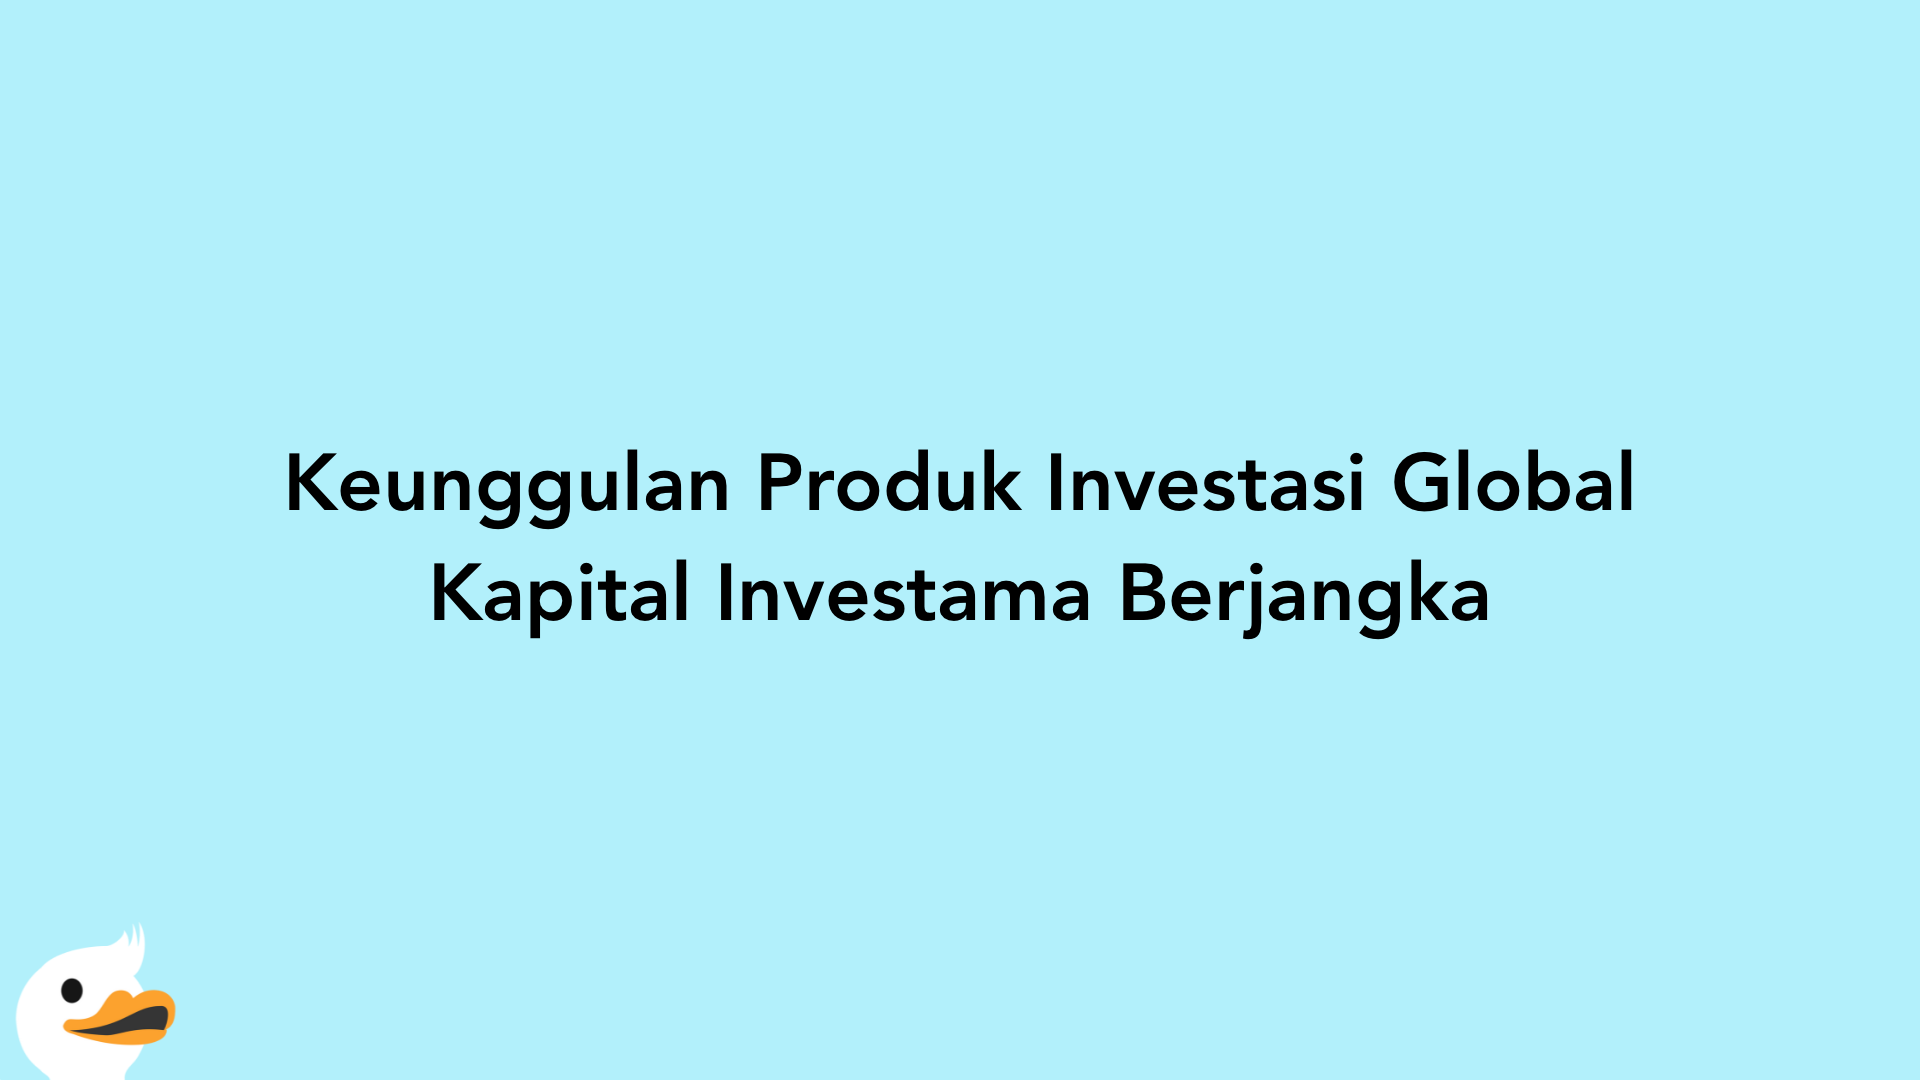 Keunggulan Produk Investasi Global Kapital Investama Berjangka